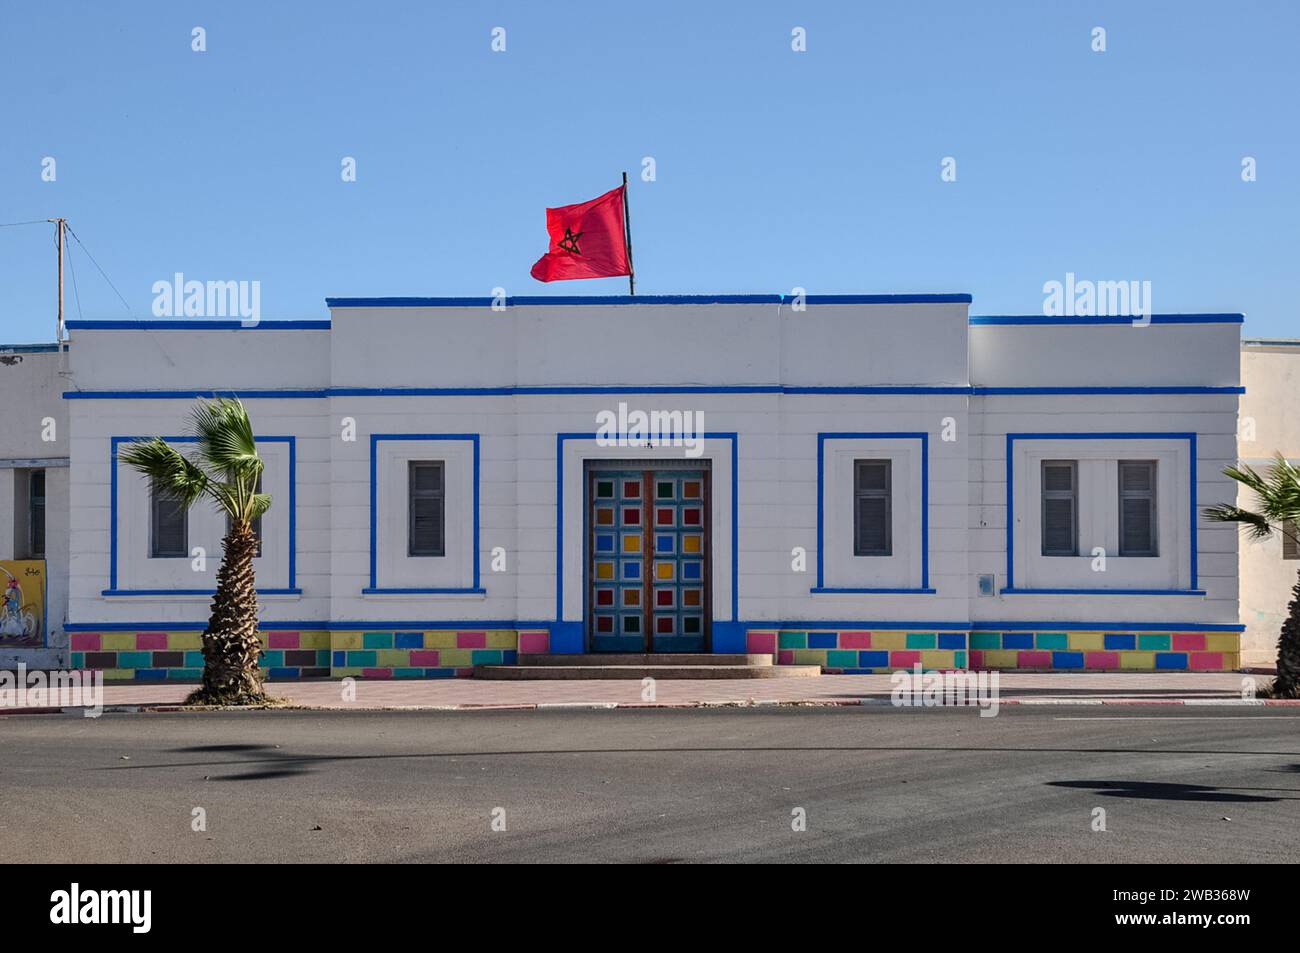 Ecole Halima Saâdia, die örtliche Schule an der Avenue Hassan II, Sidi Ifni, Marokko. Art déco-Stil, wunderschön bemalt mit marokkanischer Nationalflagge. Stockfoto